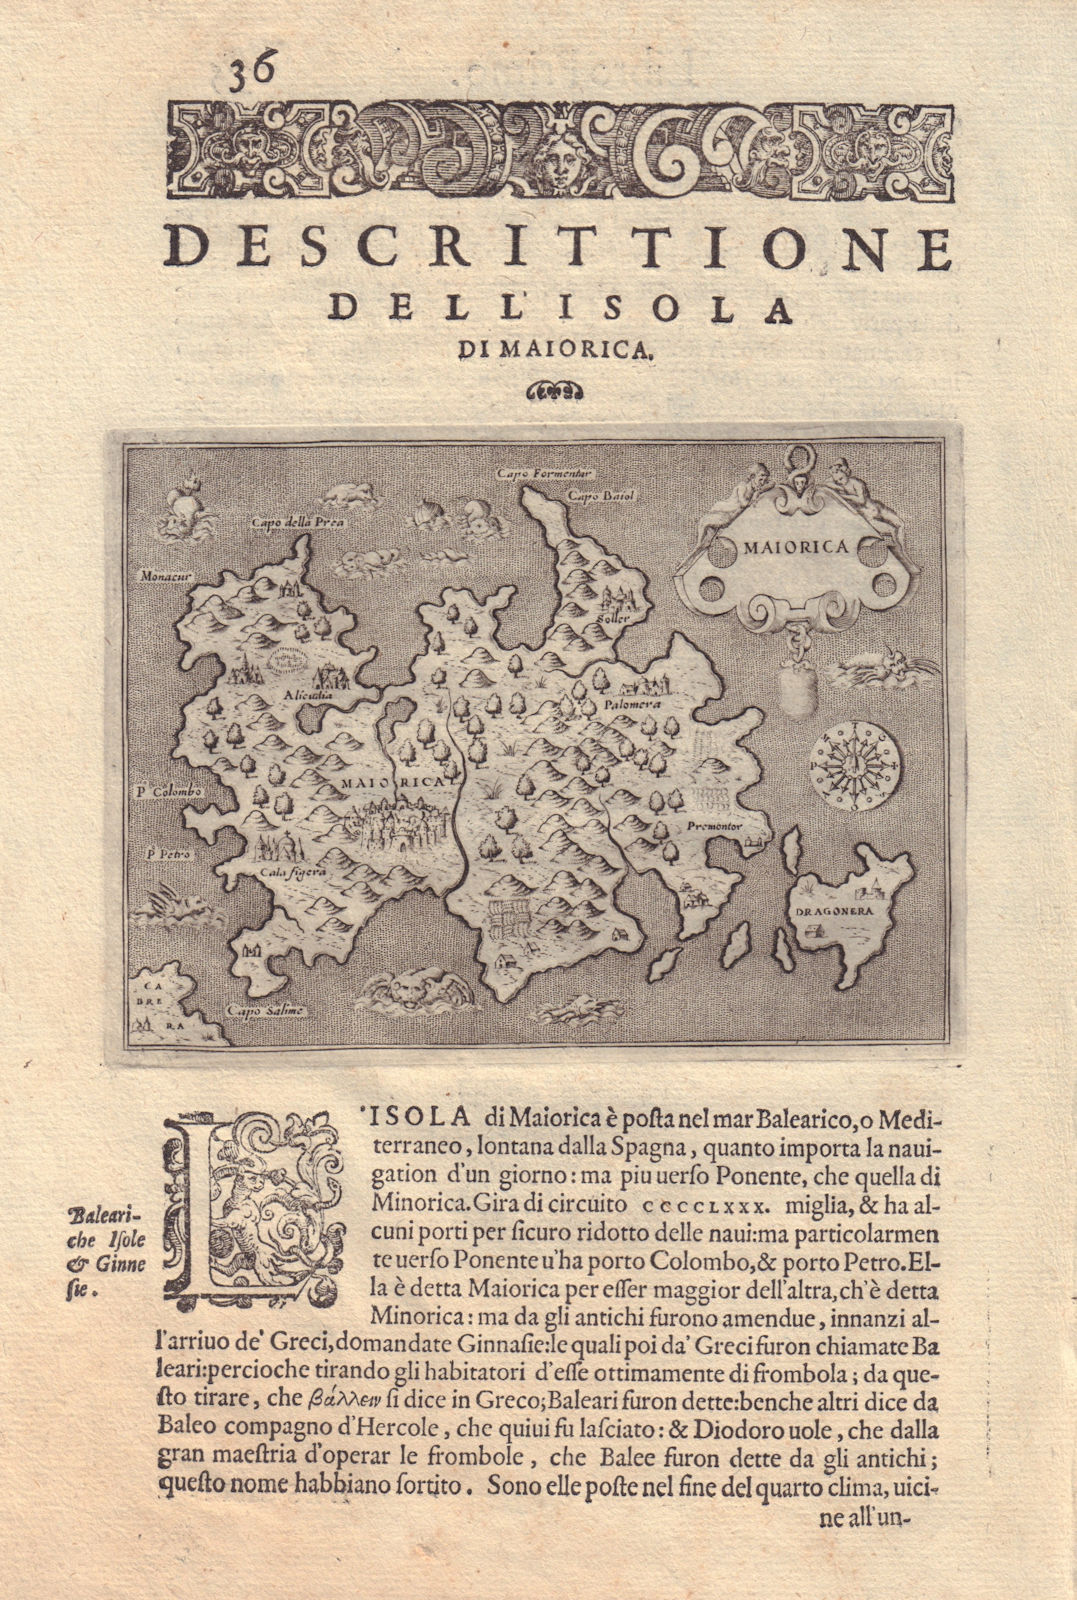 Associate Product Descrittione dell' Isola do Maiorica by PORCACCHI. Majorca Mallorca 1590 map